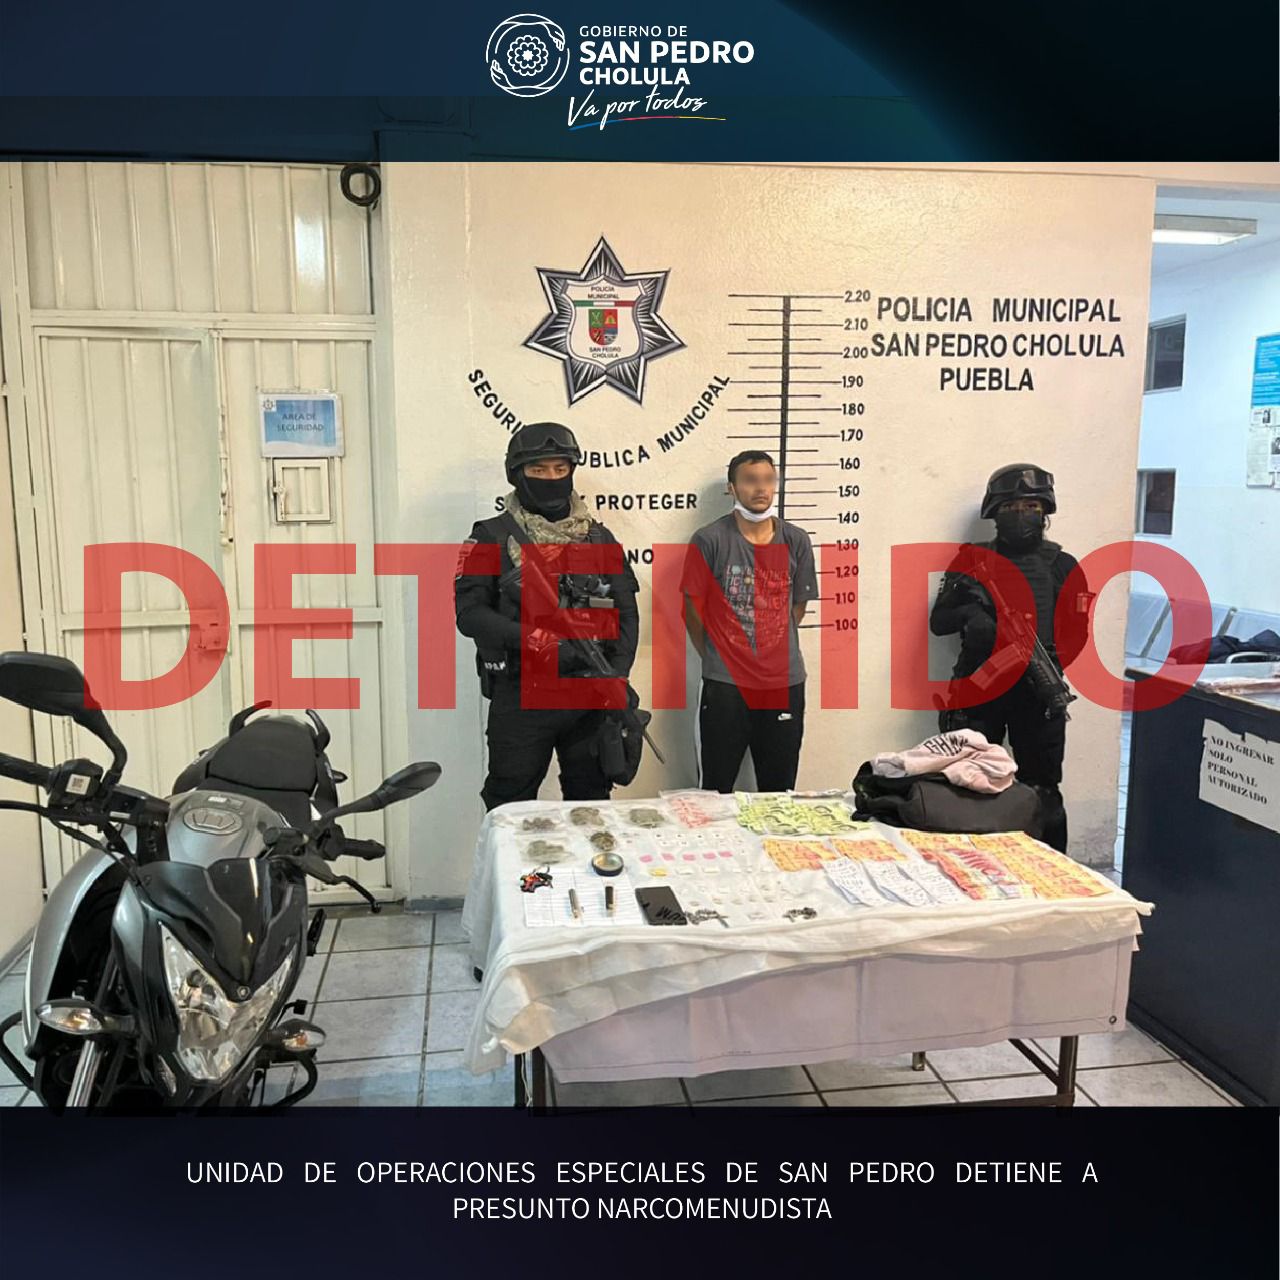 Unidad de operaciones especiales de San Pedro detiene a presunto narcomenudista